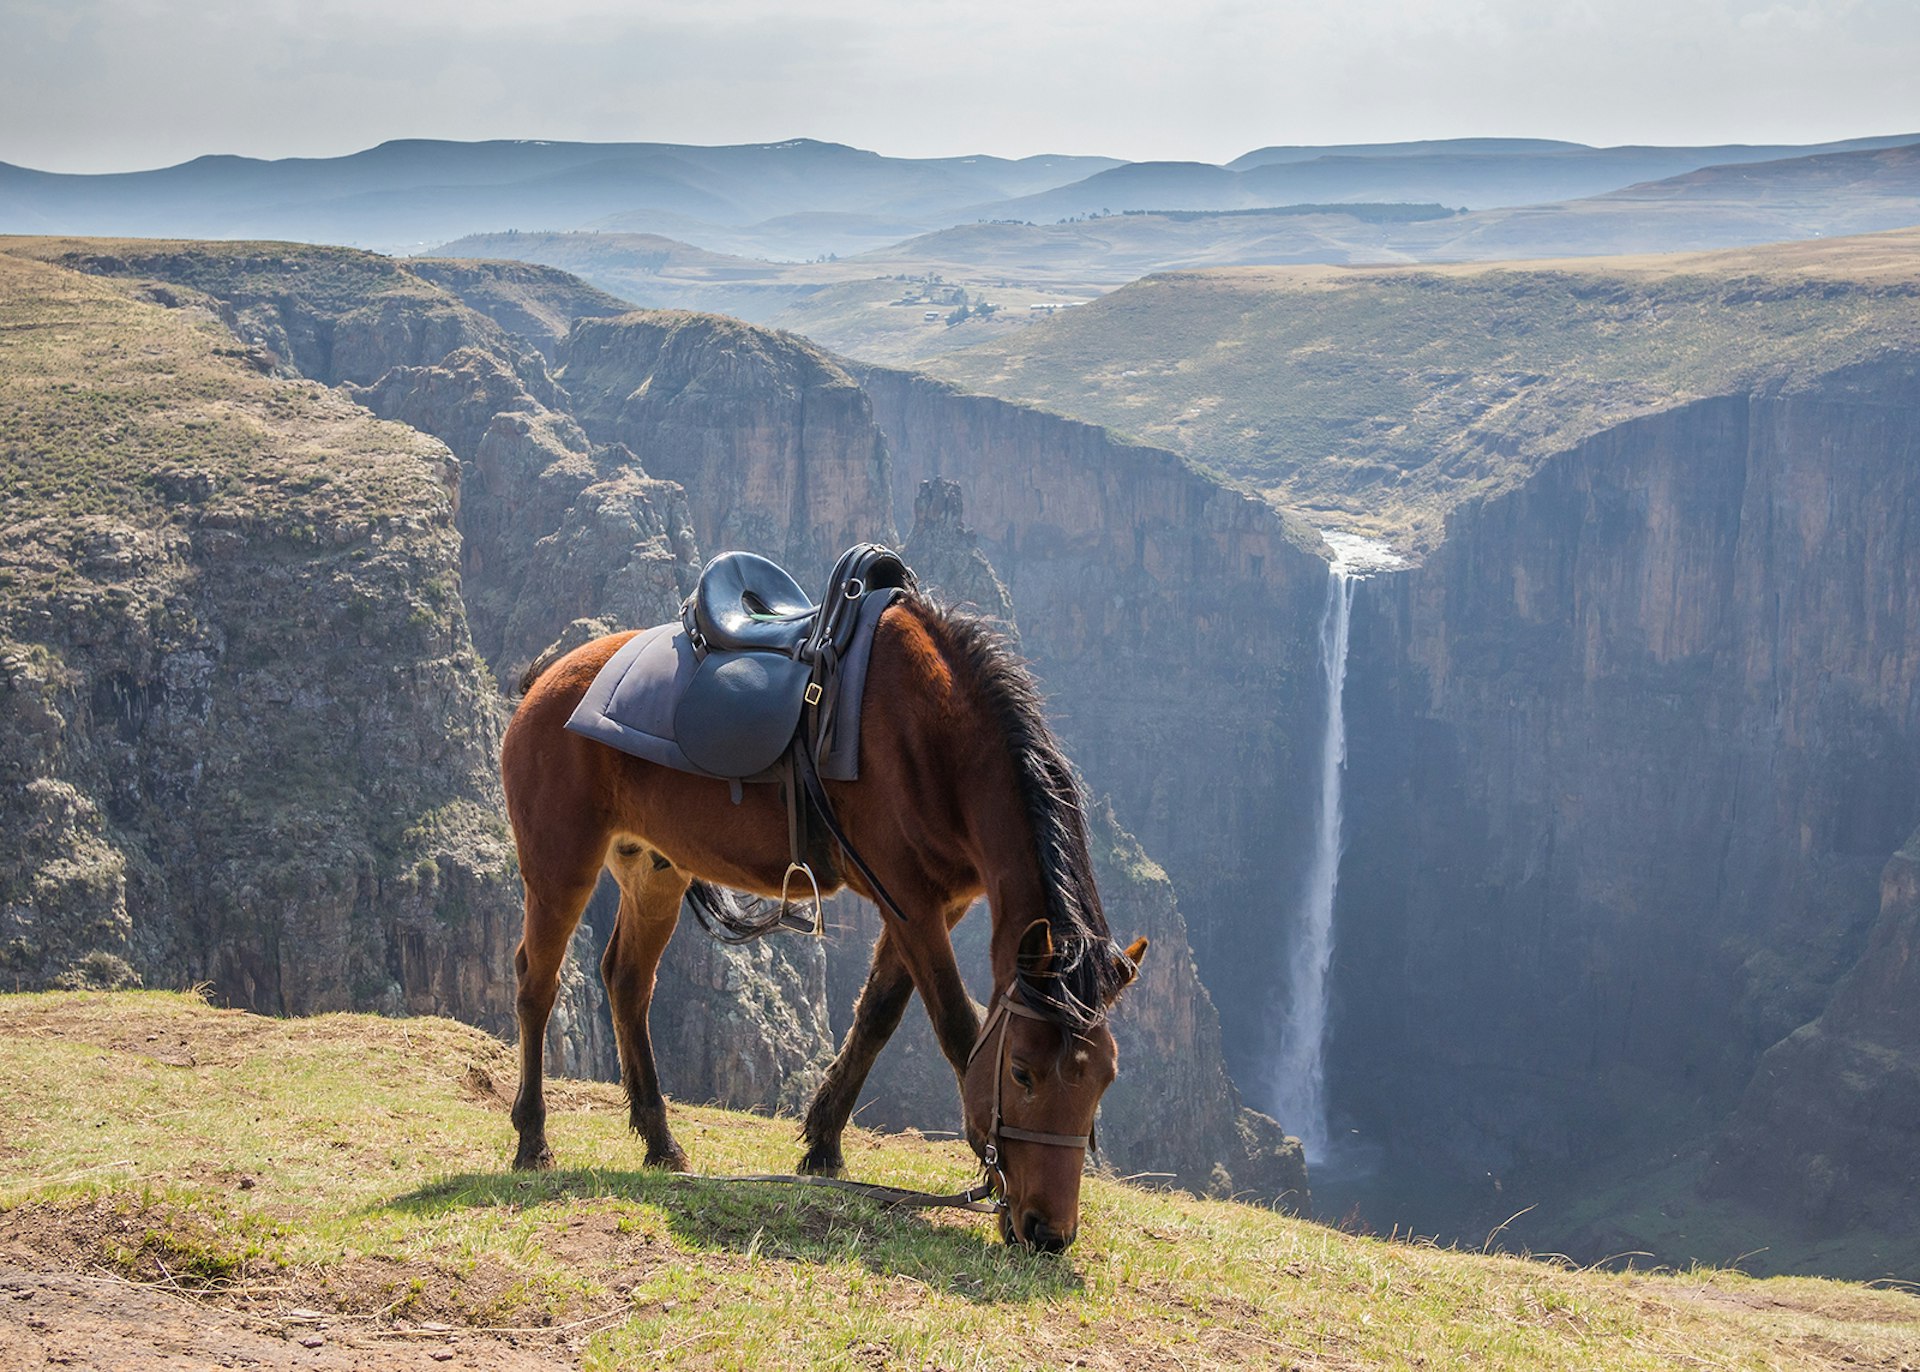 A Basotho pony grazing on a hilltop in Lesotho © Fabian Plock / Shutterstock